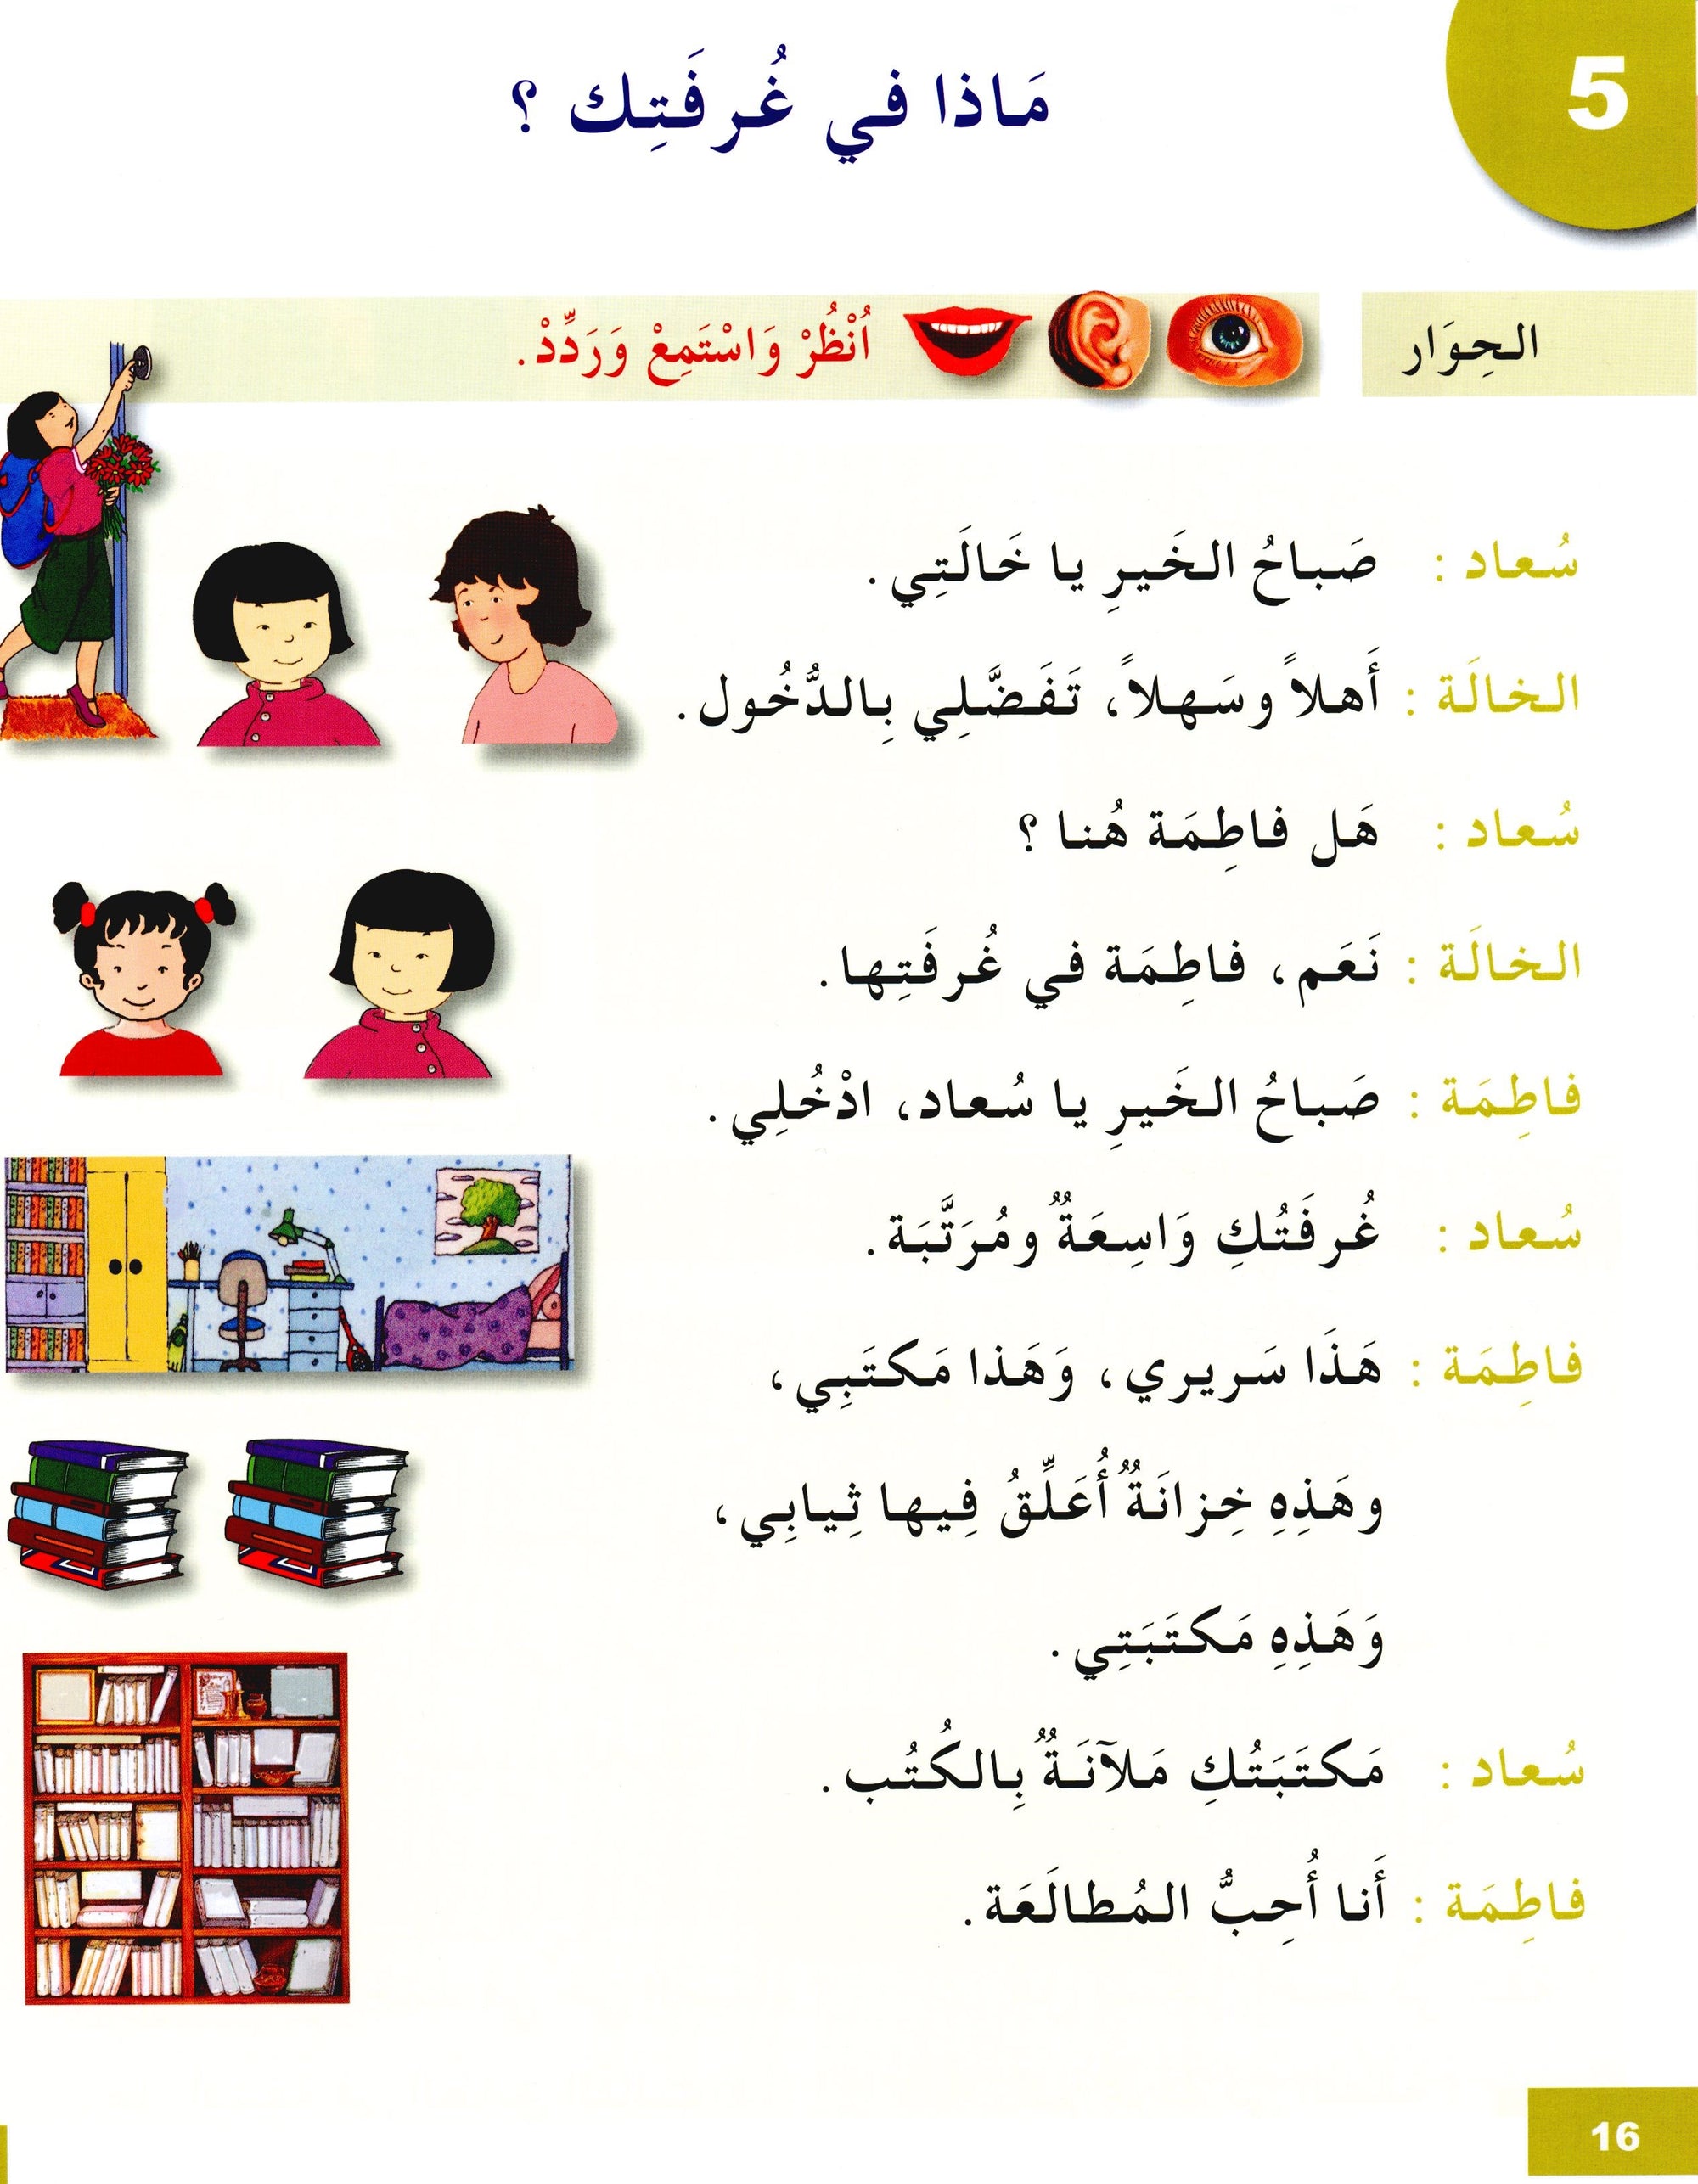 I Learn Arabic Simplified Curriculum Textbook Level 3 أتعلم العربية المنهج الميسر كتاب التلميذ